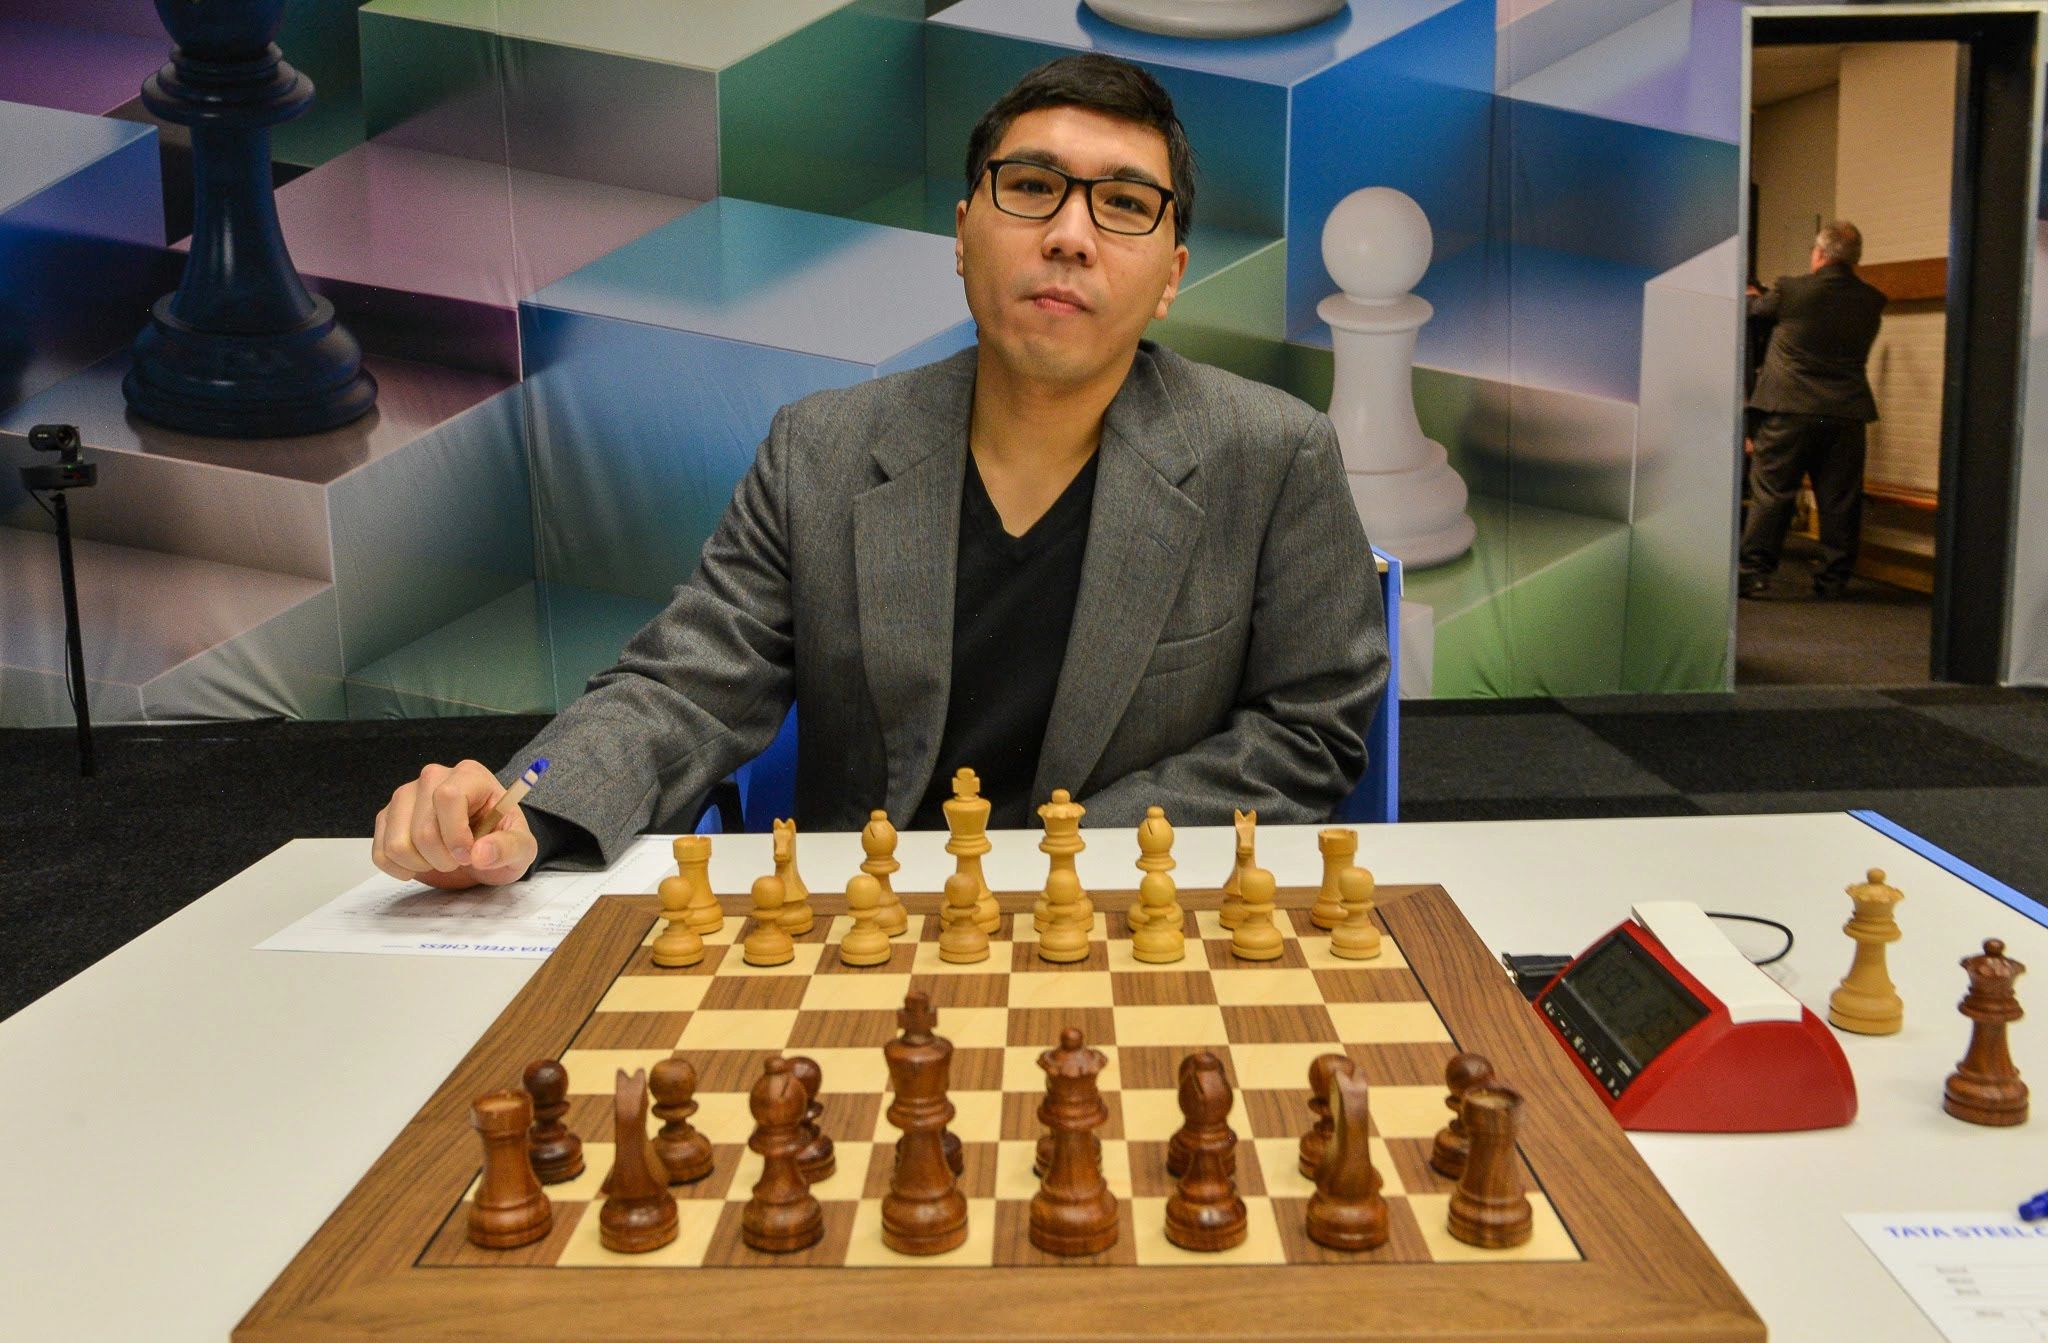 Tata Steel Masters 2023 – Round 3 pairings – Chessdom